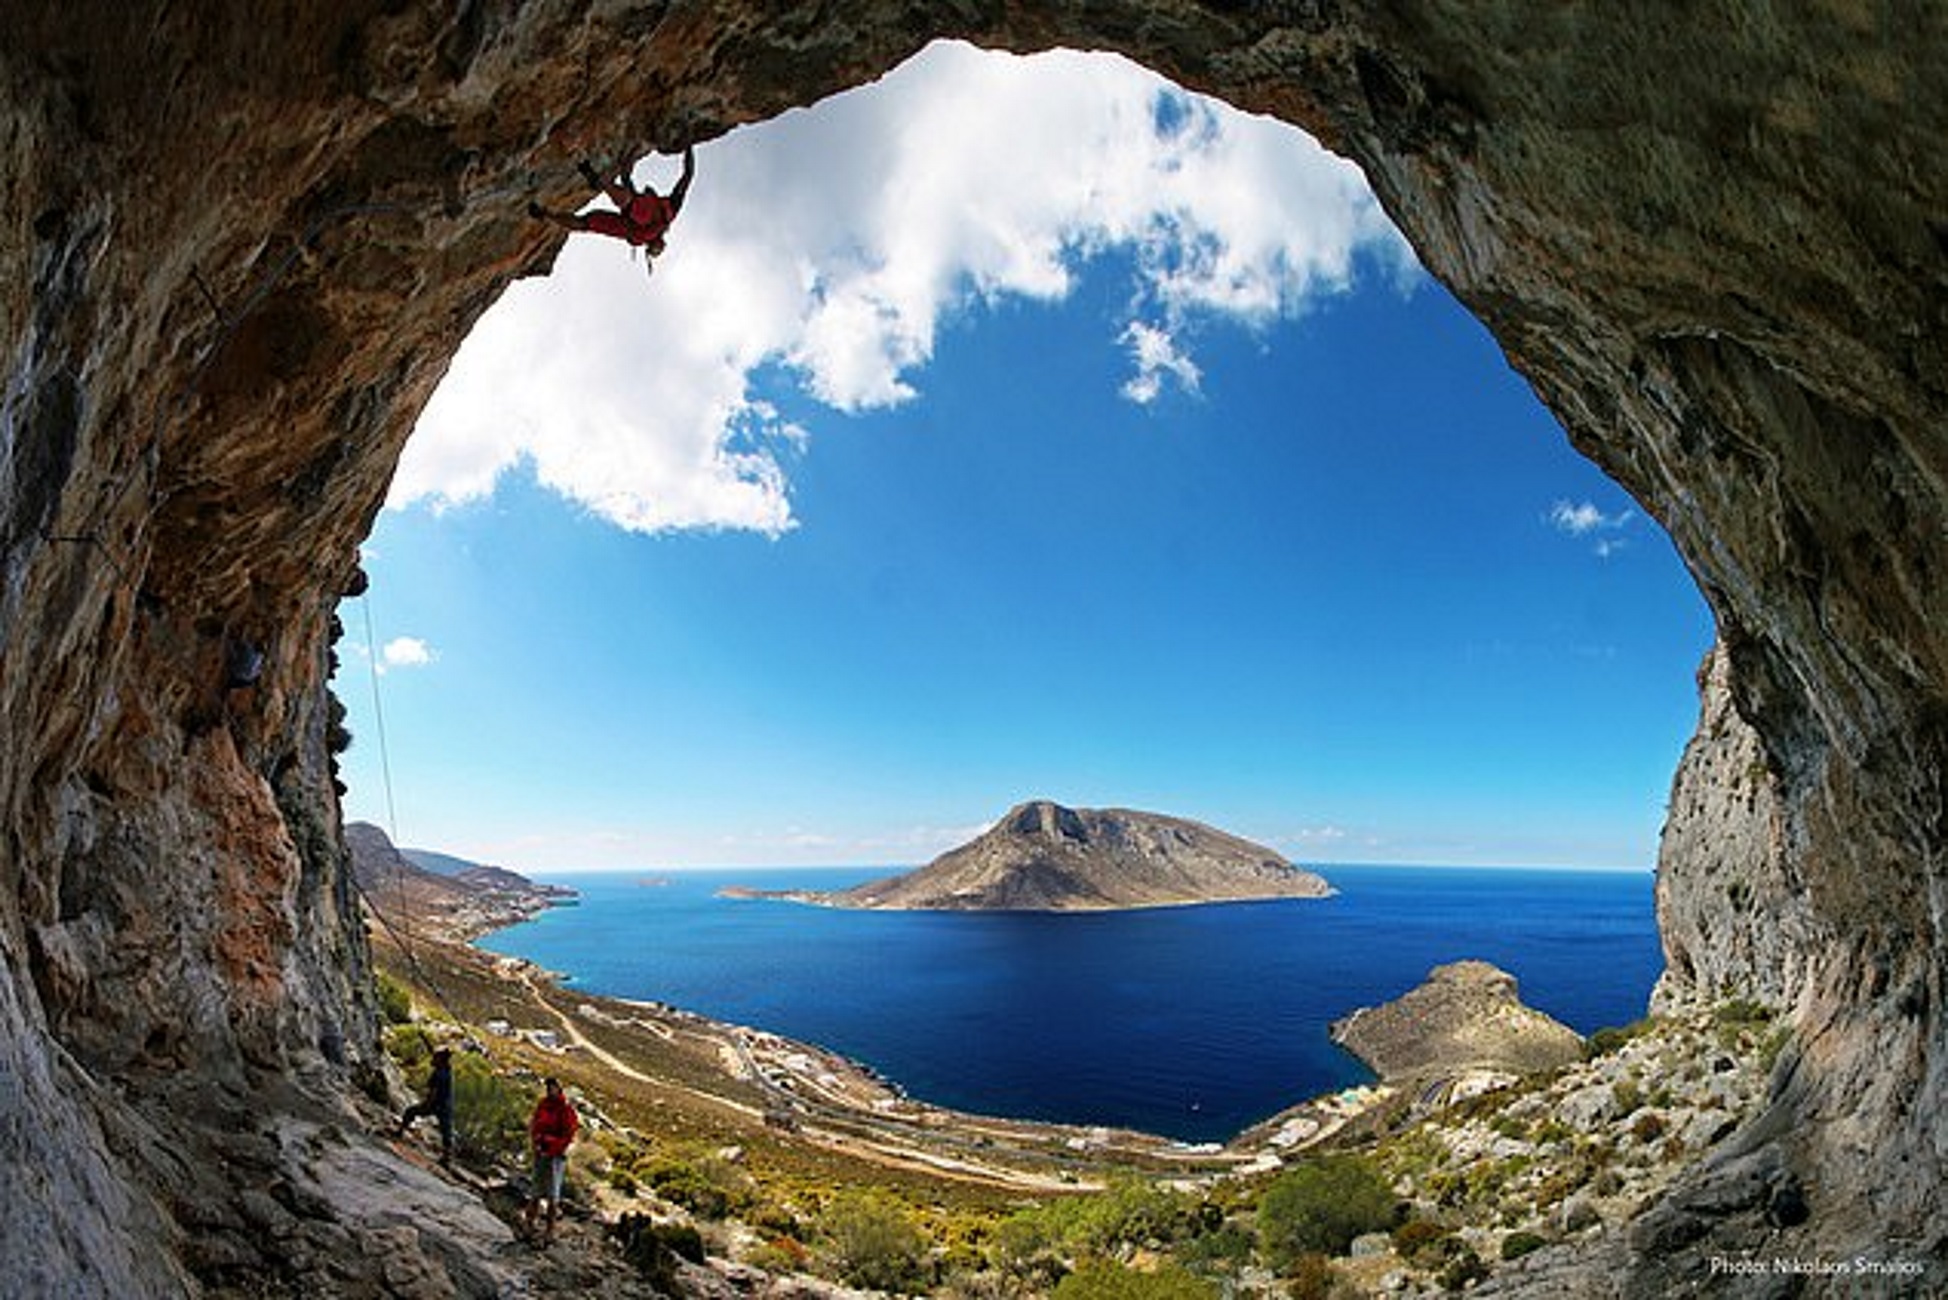 Τουρισμός: Αυτό ψηφίστηκε ως το καλύτερο ελληνικό νησί για διακοπές εκτός τουριστικής αιχμής